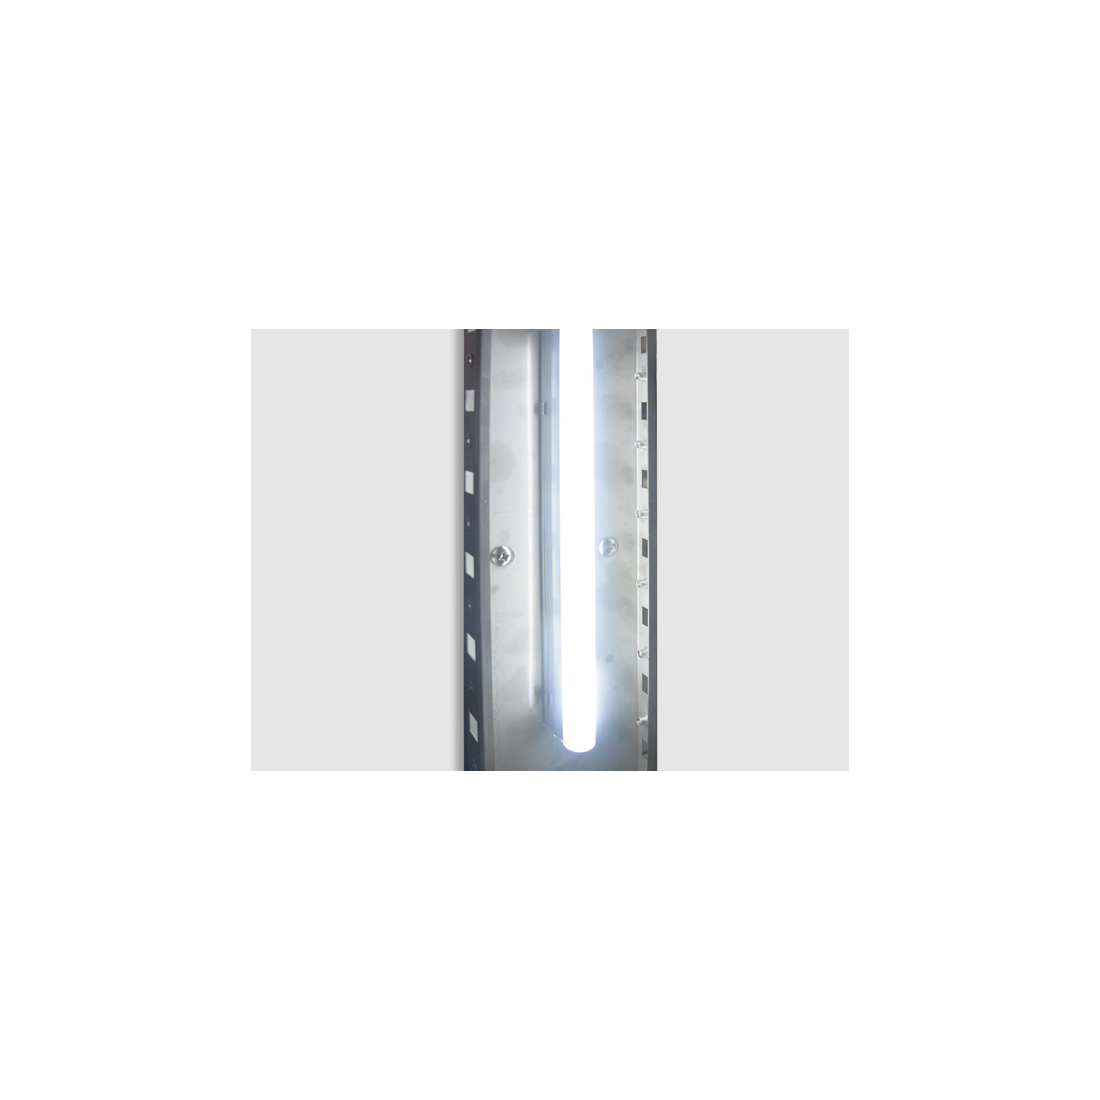 ثلاجة كاونتر بسطح عمل 2 باب زجاجية ,QRG2100, من كول هيد|mkayn|مكاين